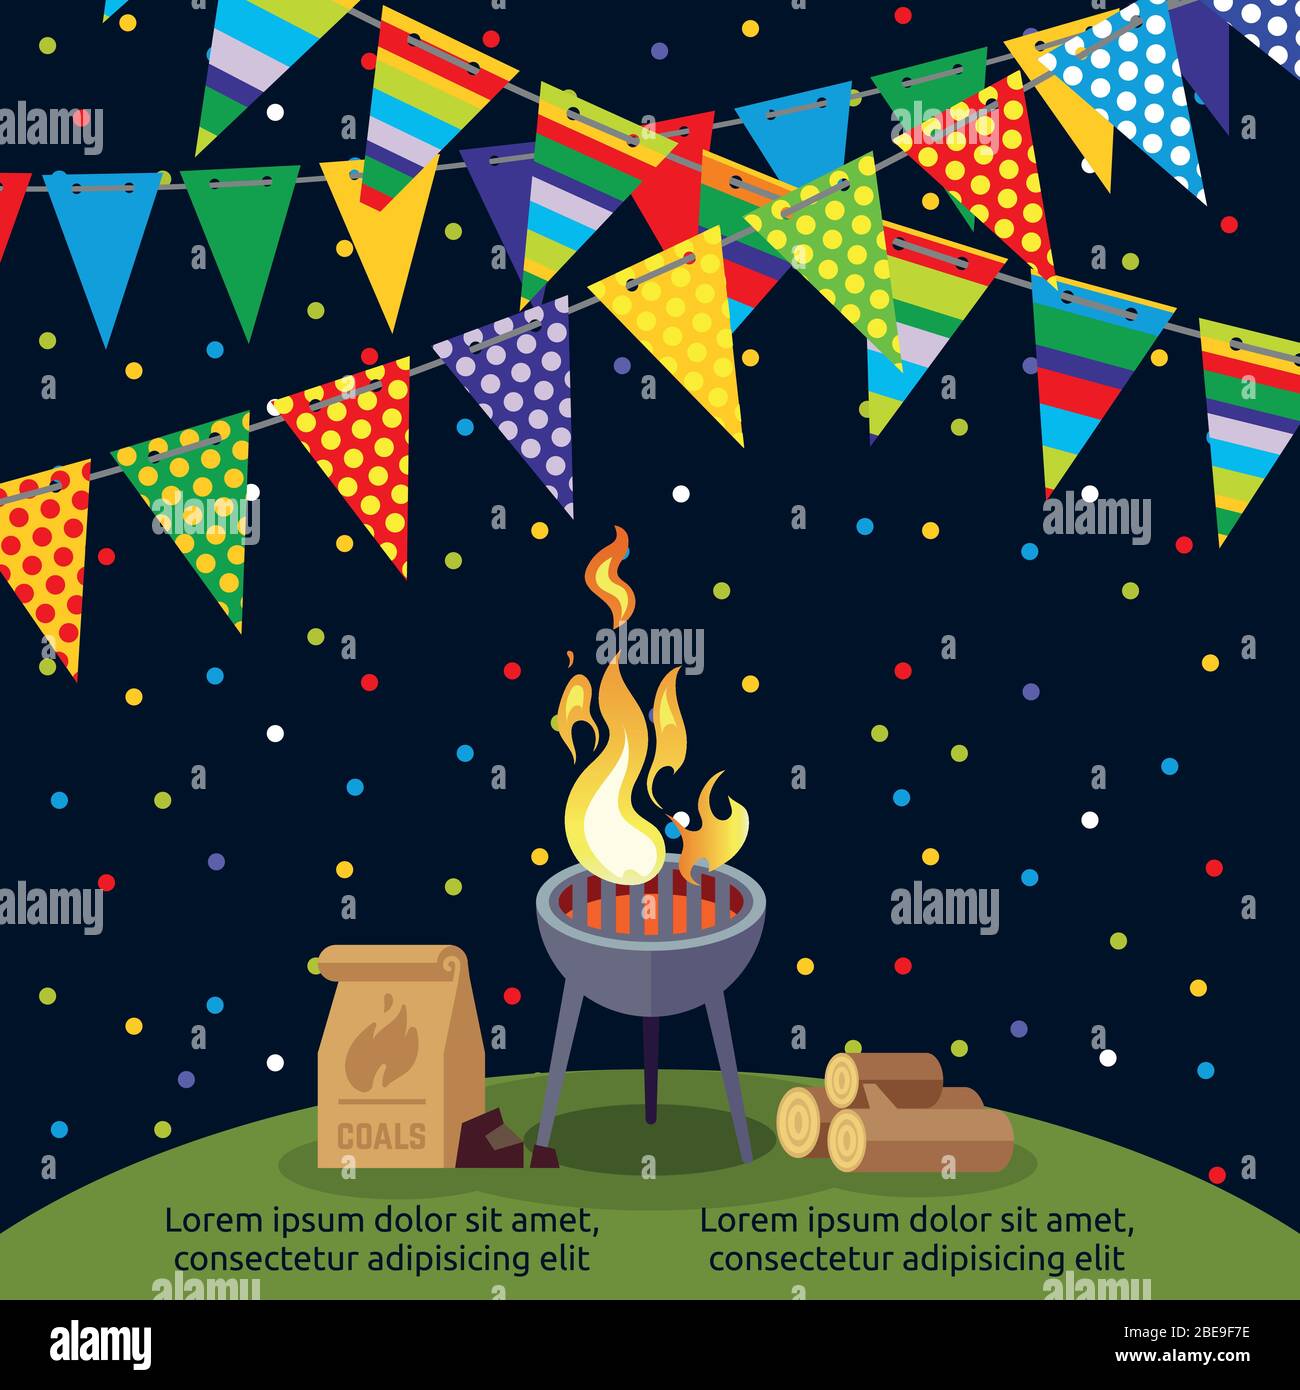 Party- oder BBQ-Poster mit bunten Fahnen. BBQ Grill Party, Kochen Steak Fleisch, Vektor-Illustration Stock Vektor